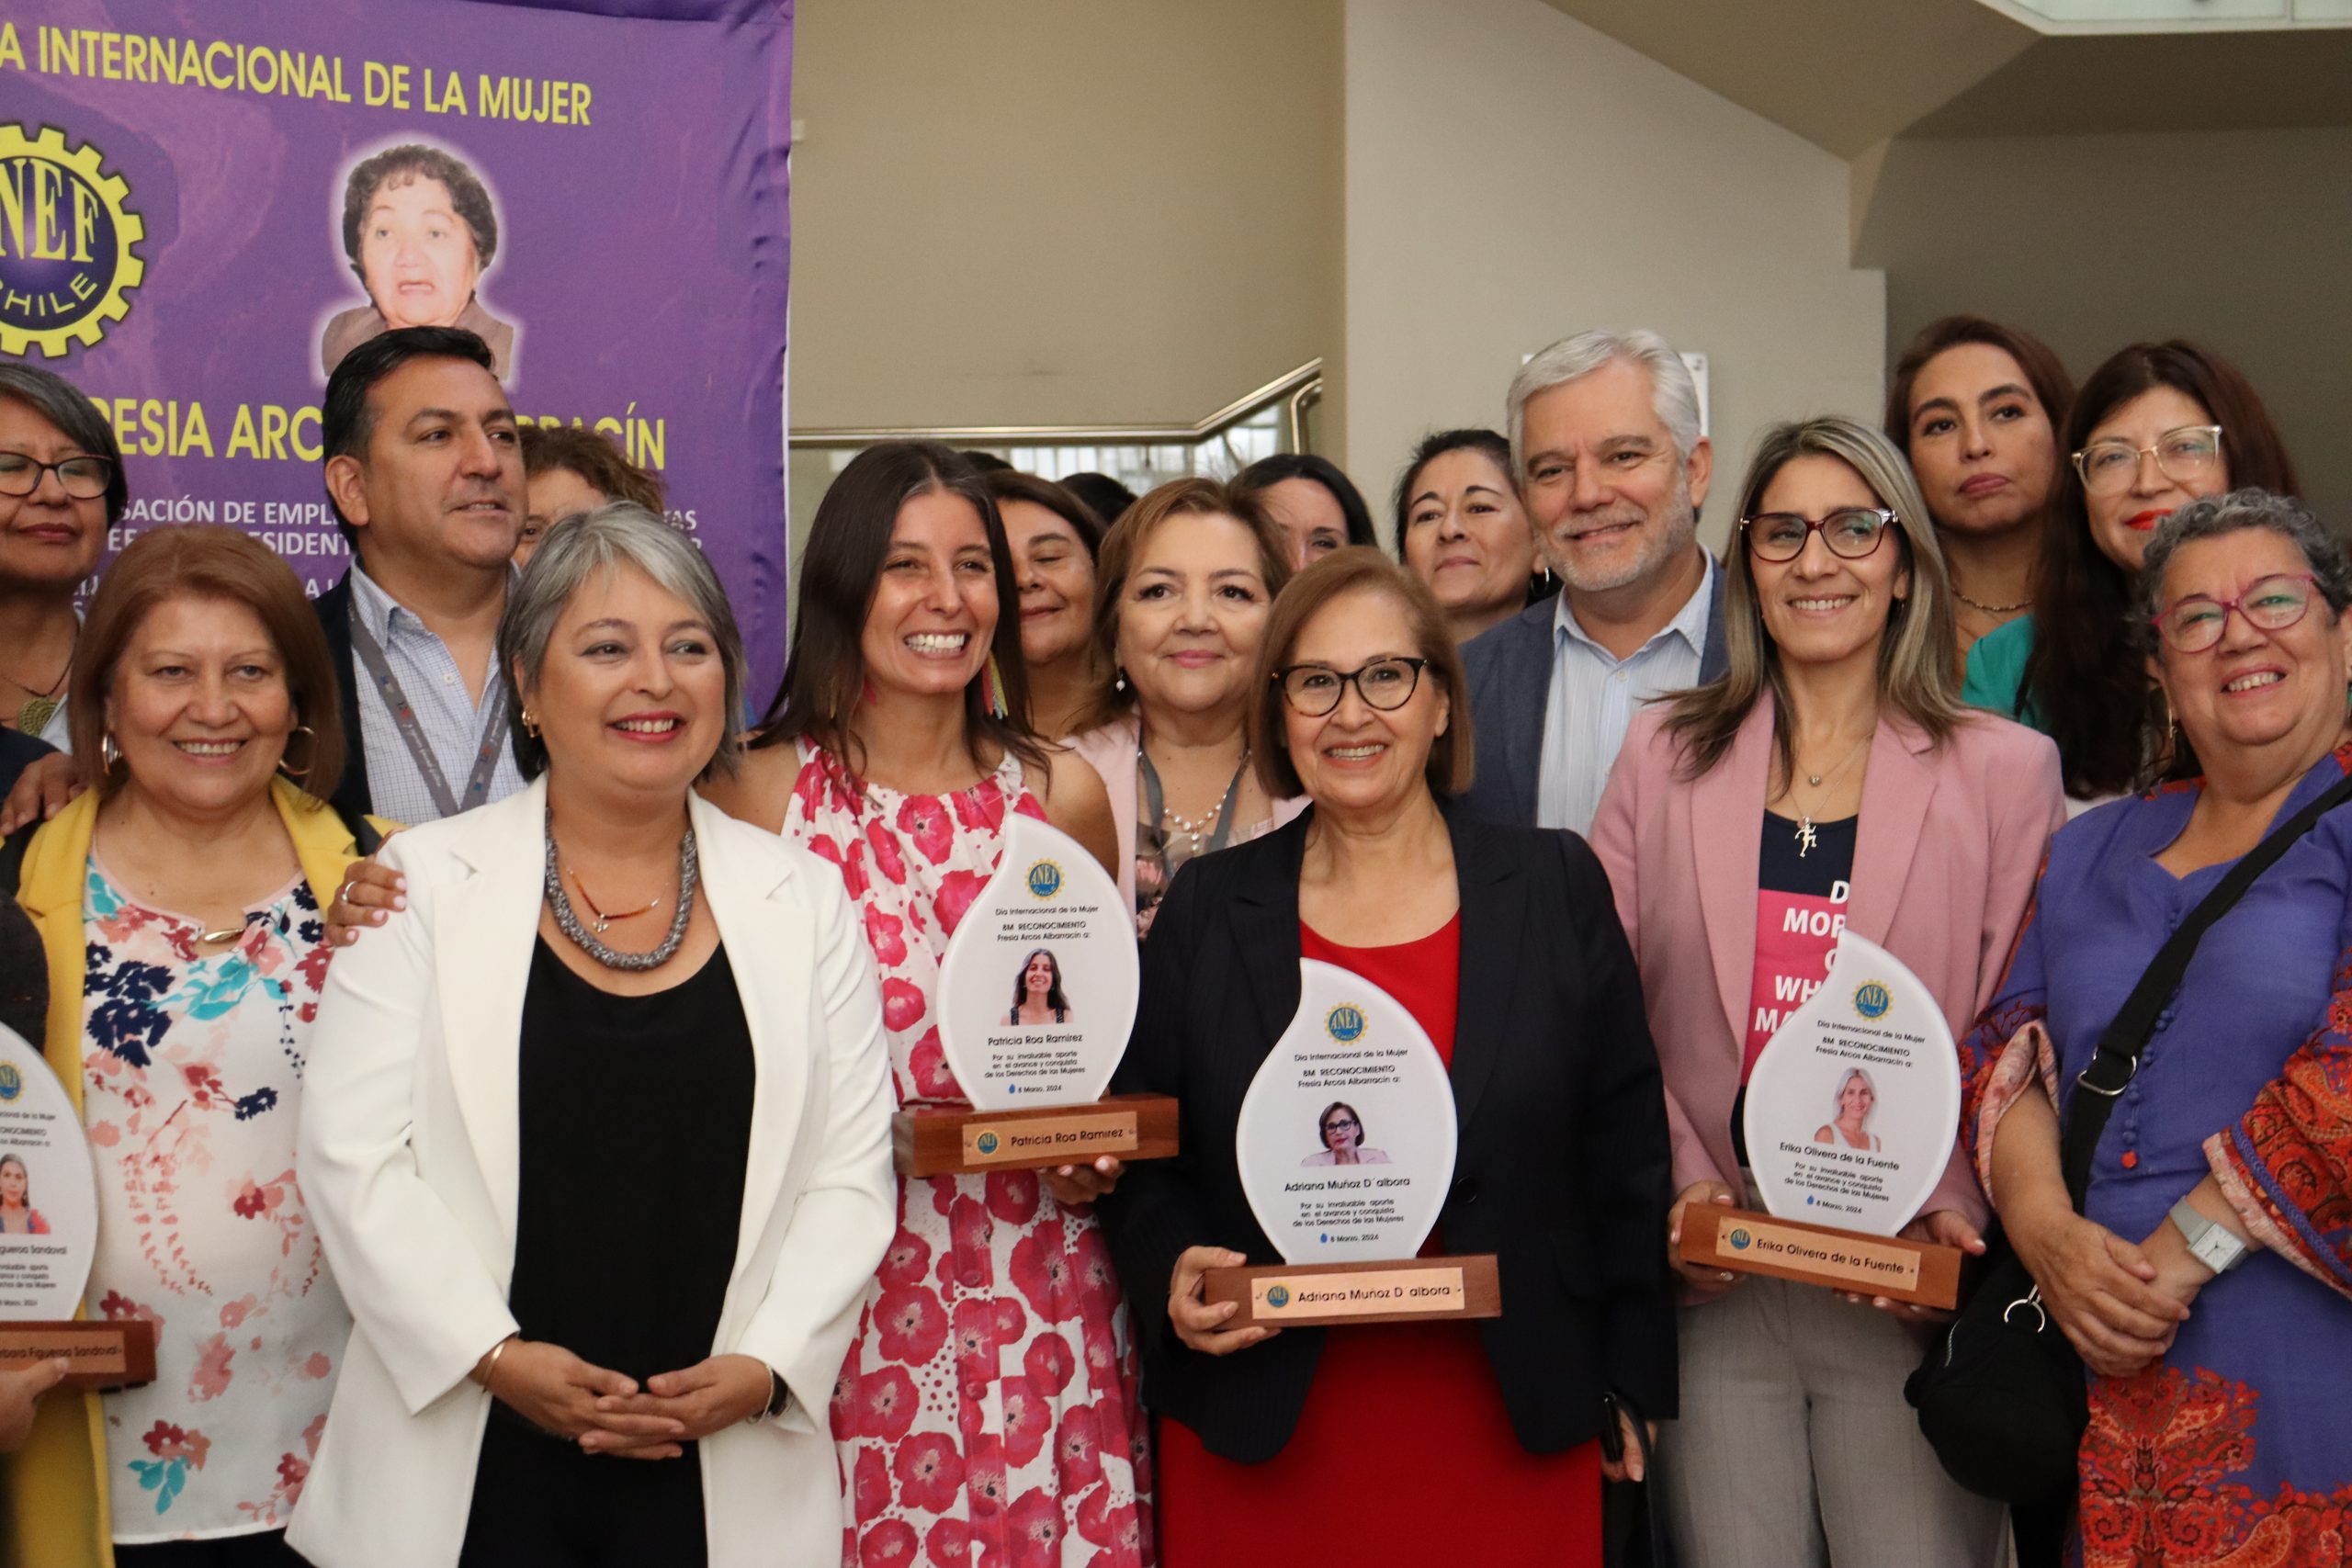 Con ceremonia de reconocimiento Fresia Arcos Albarracín ANEF cierra ciclo conmemorativo por Día Internacional de la Mujer